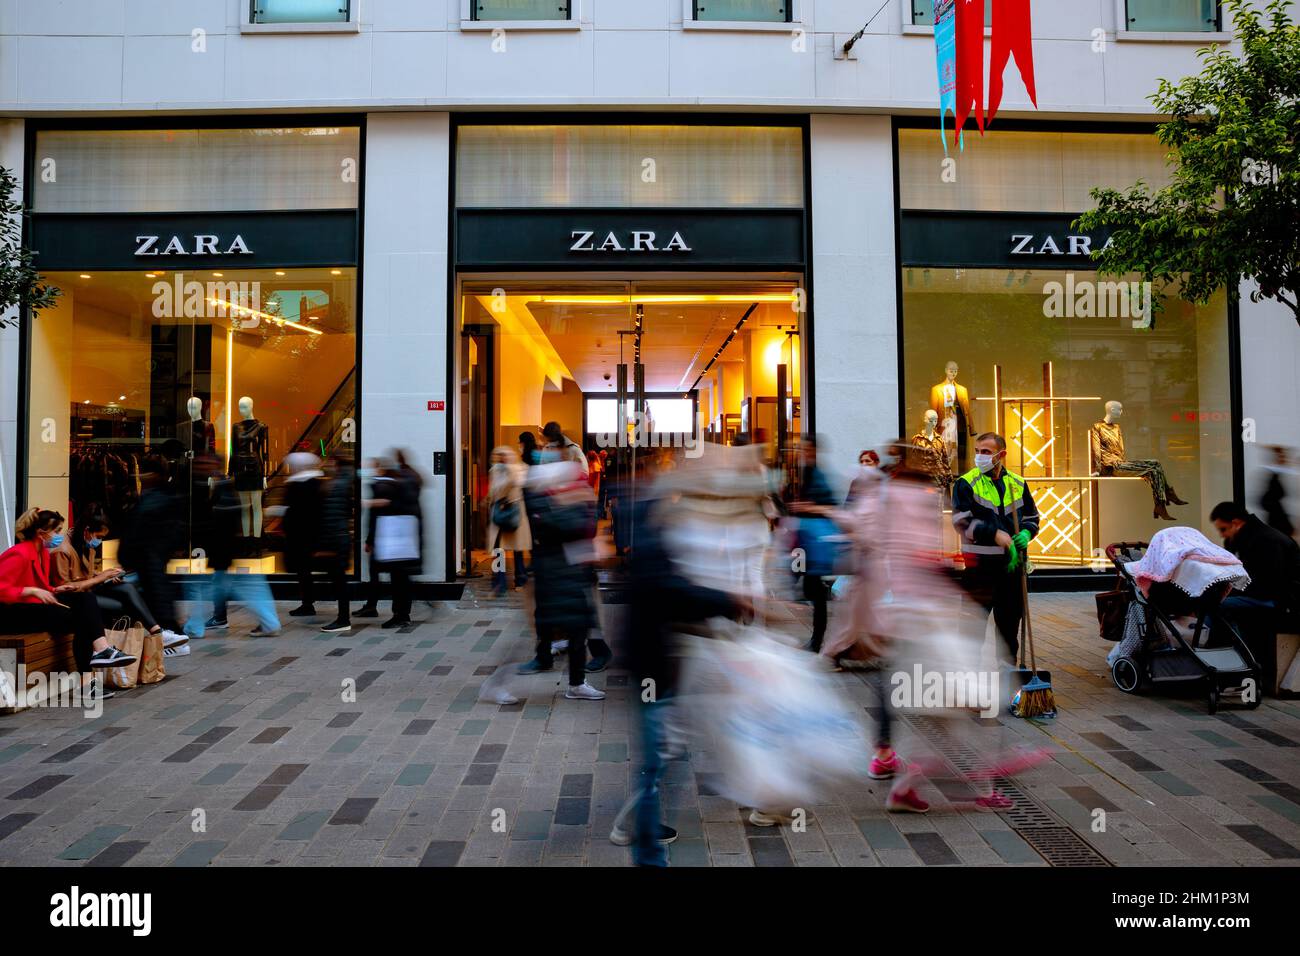 Zara street shop with motion of people. Istanbul Turkey - 11.13.2021 Stock  Photo - Alamy